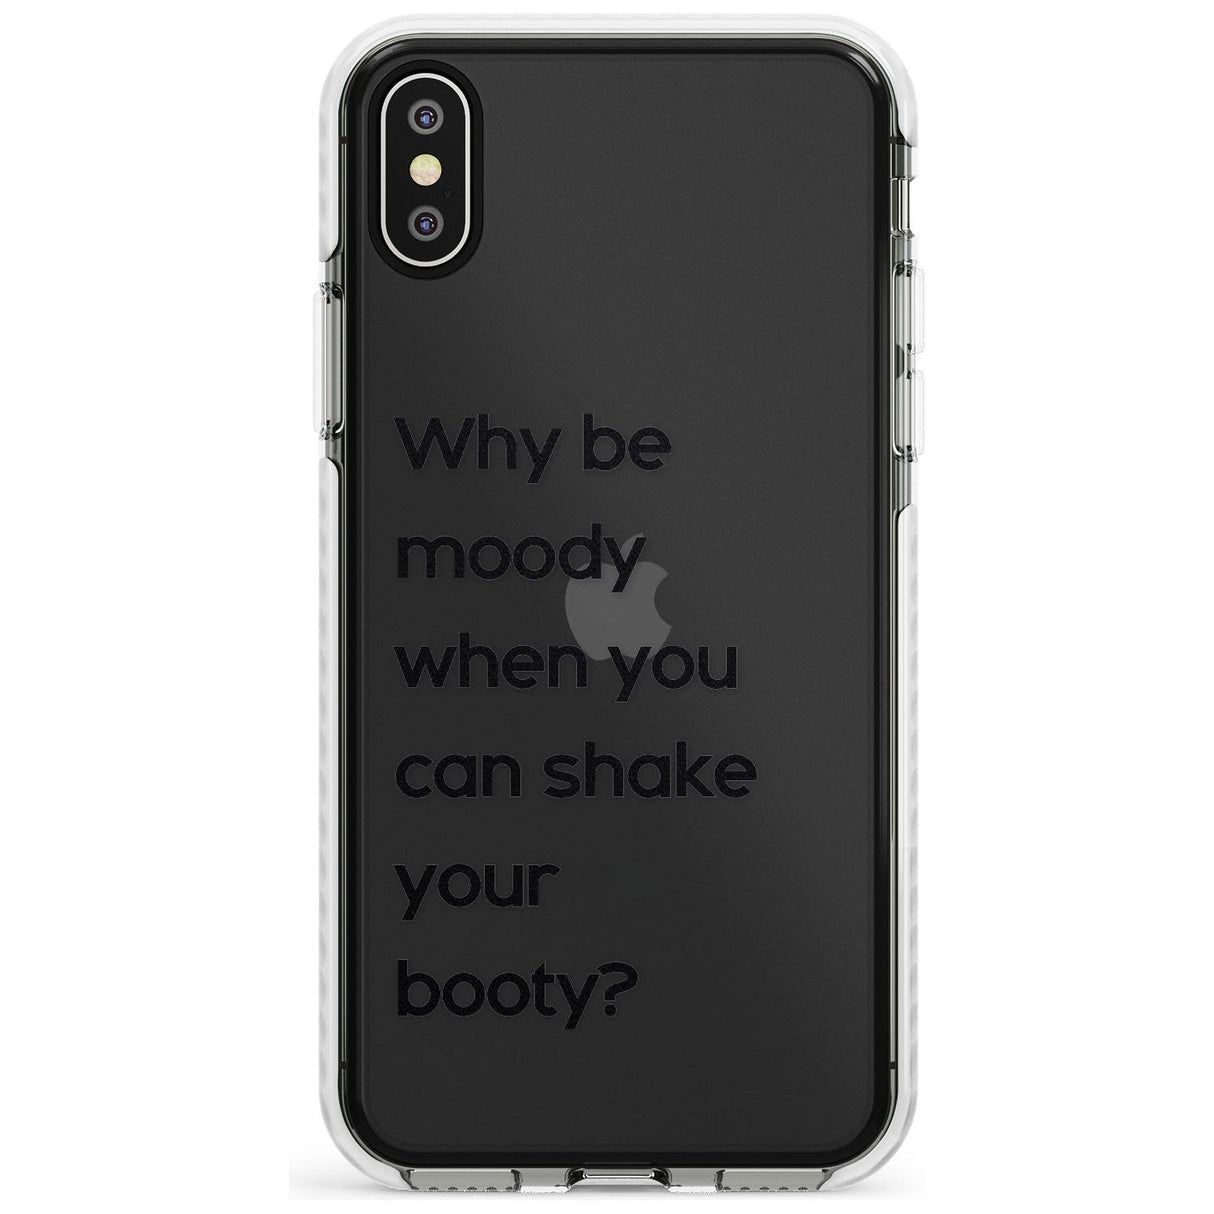 Why be moody? Slim TPU Phone Case Warehouse X XS Max XR